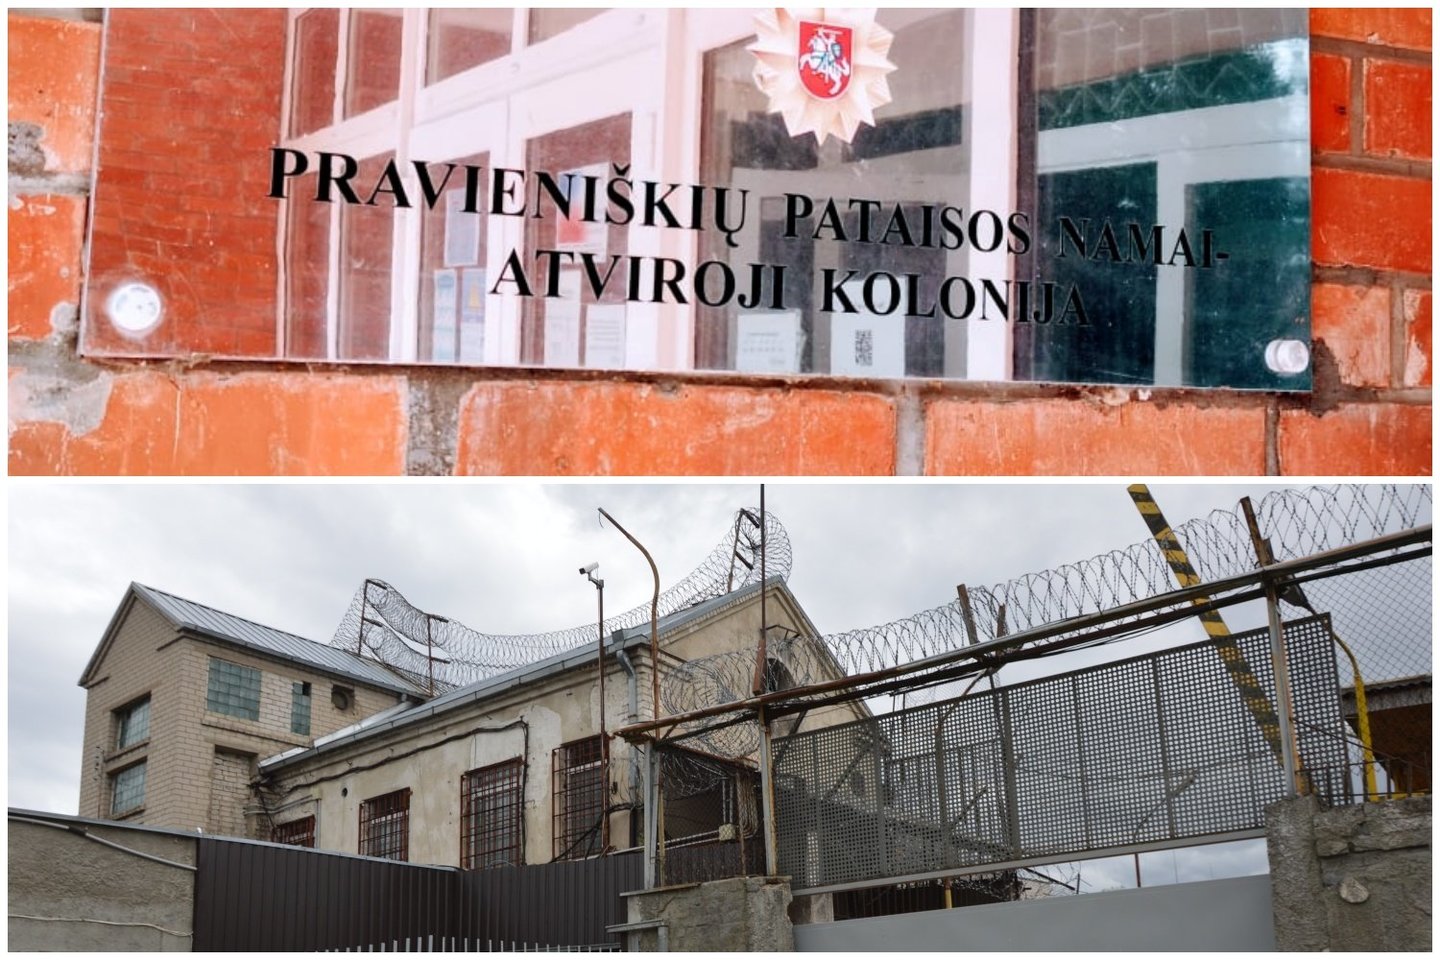 Pravieniškių pataisos namuose įsibrauta į pareigūnų kabinetus.<br> Kalėjimų departamento nuotr.